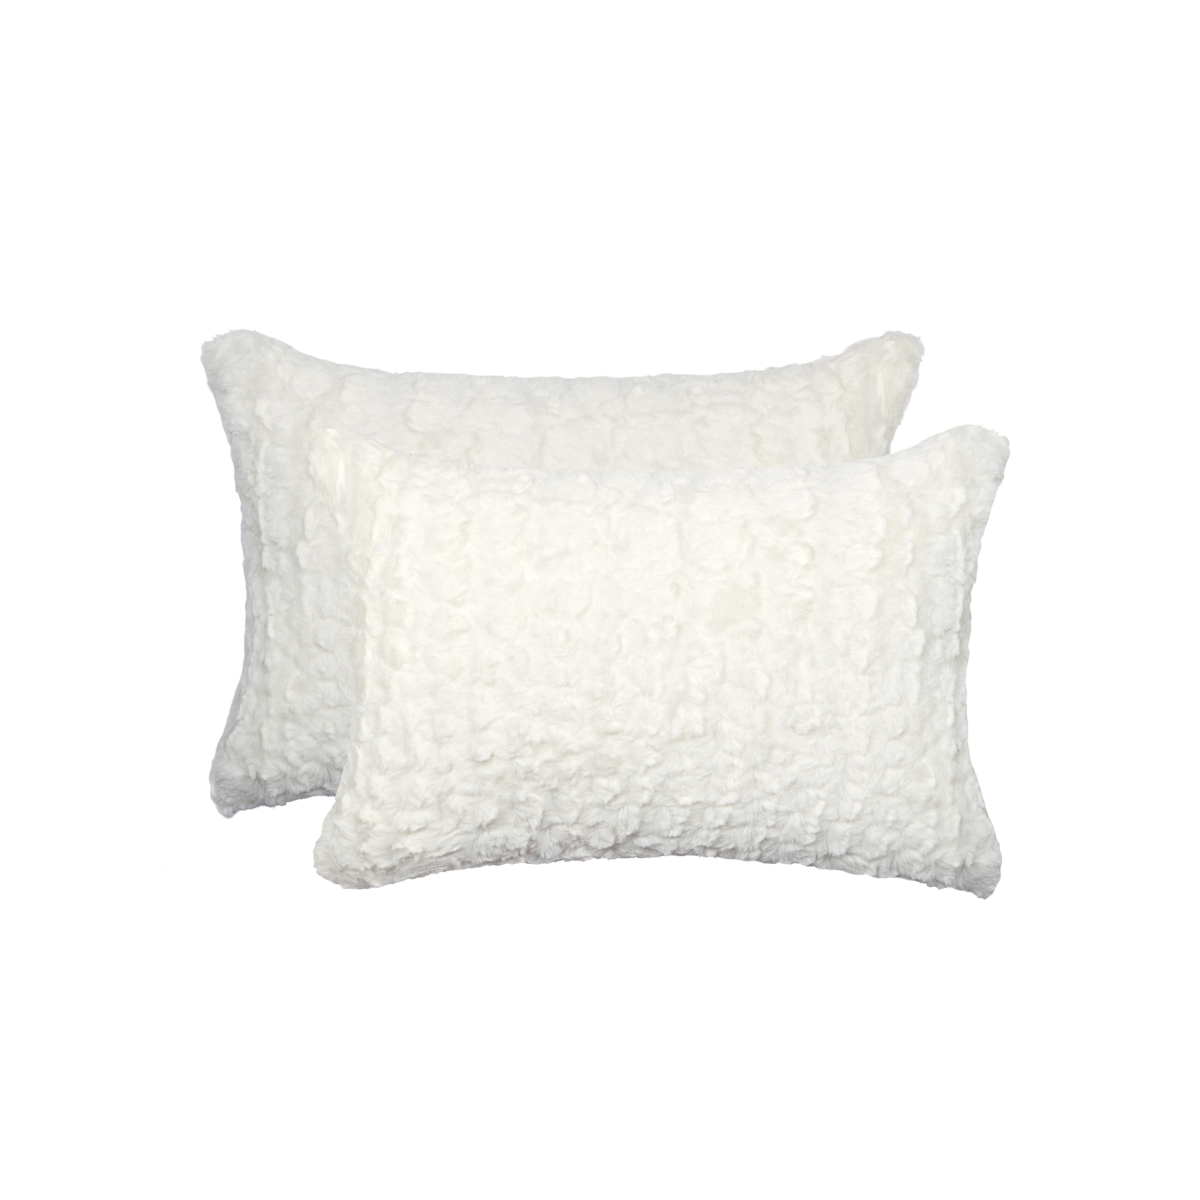 676685041197 12 X 20 In. Belton Sheepskin Pillow - Ivory Mink - Pack Of 2